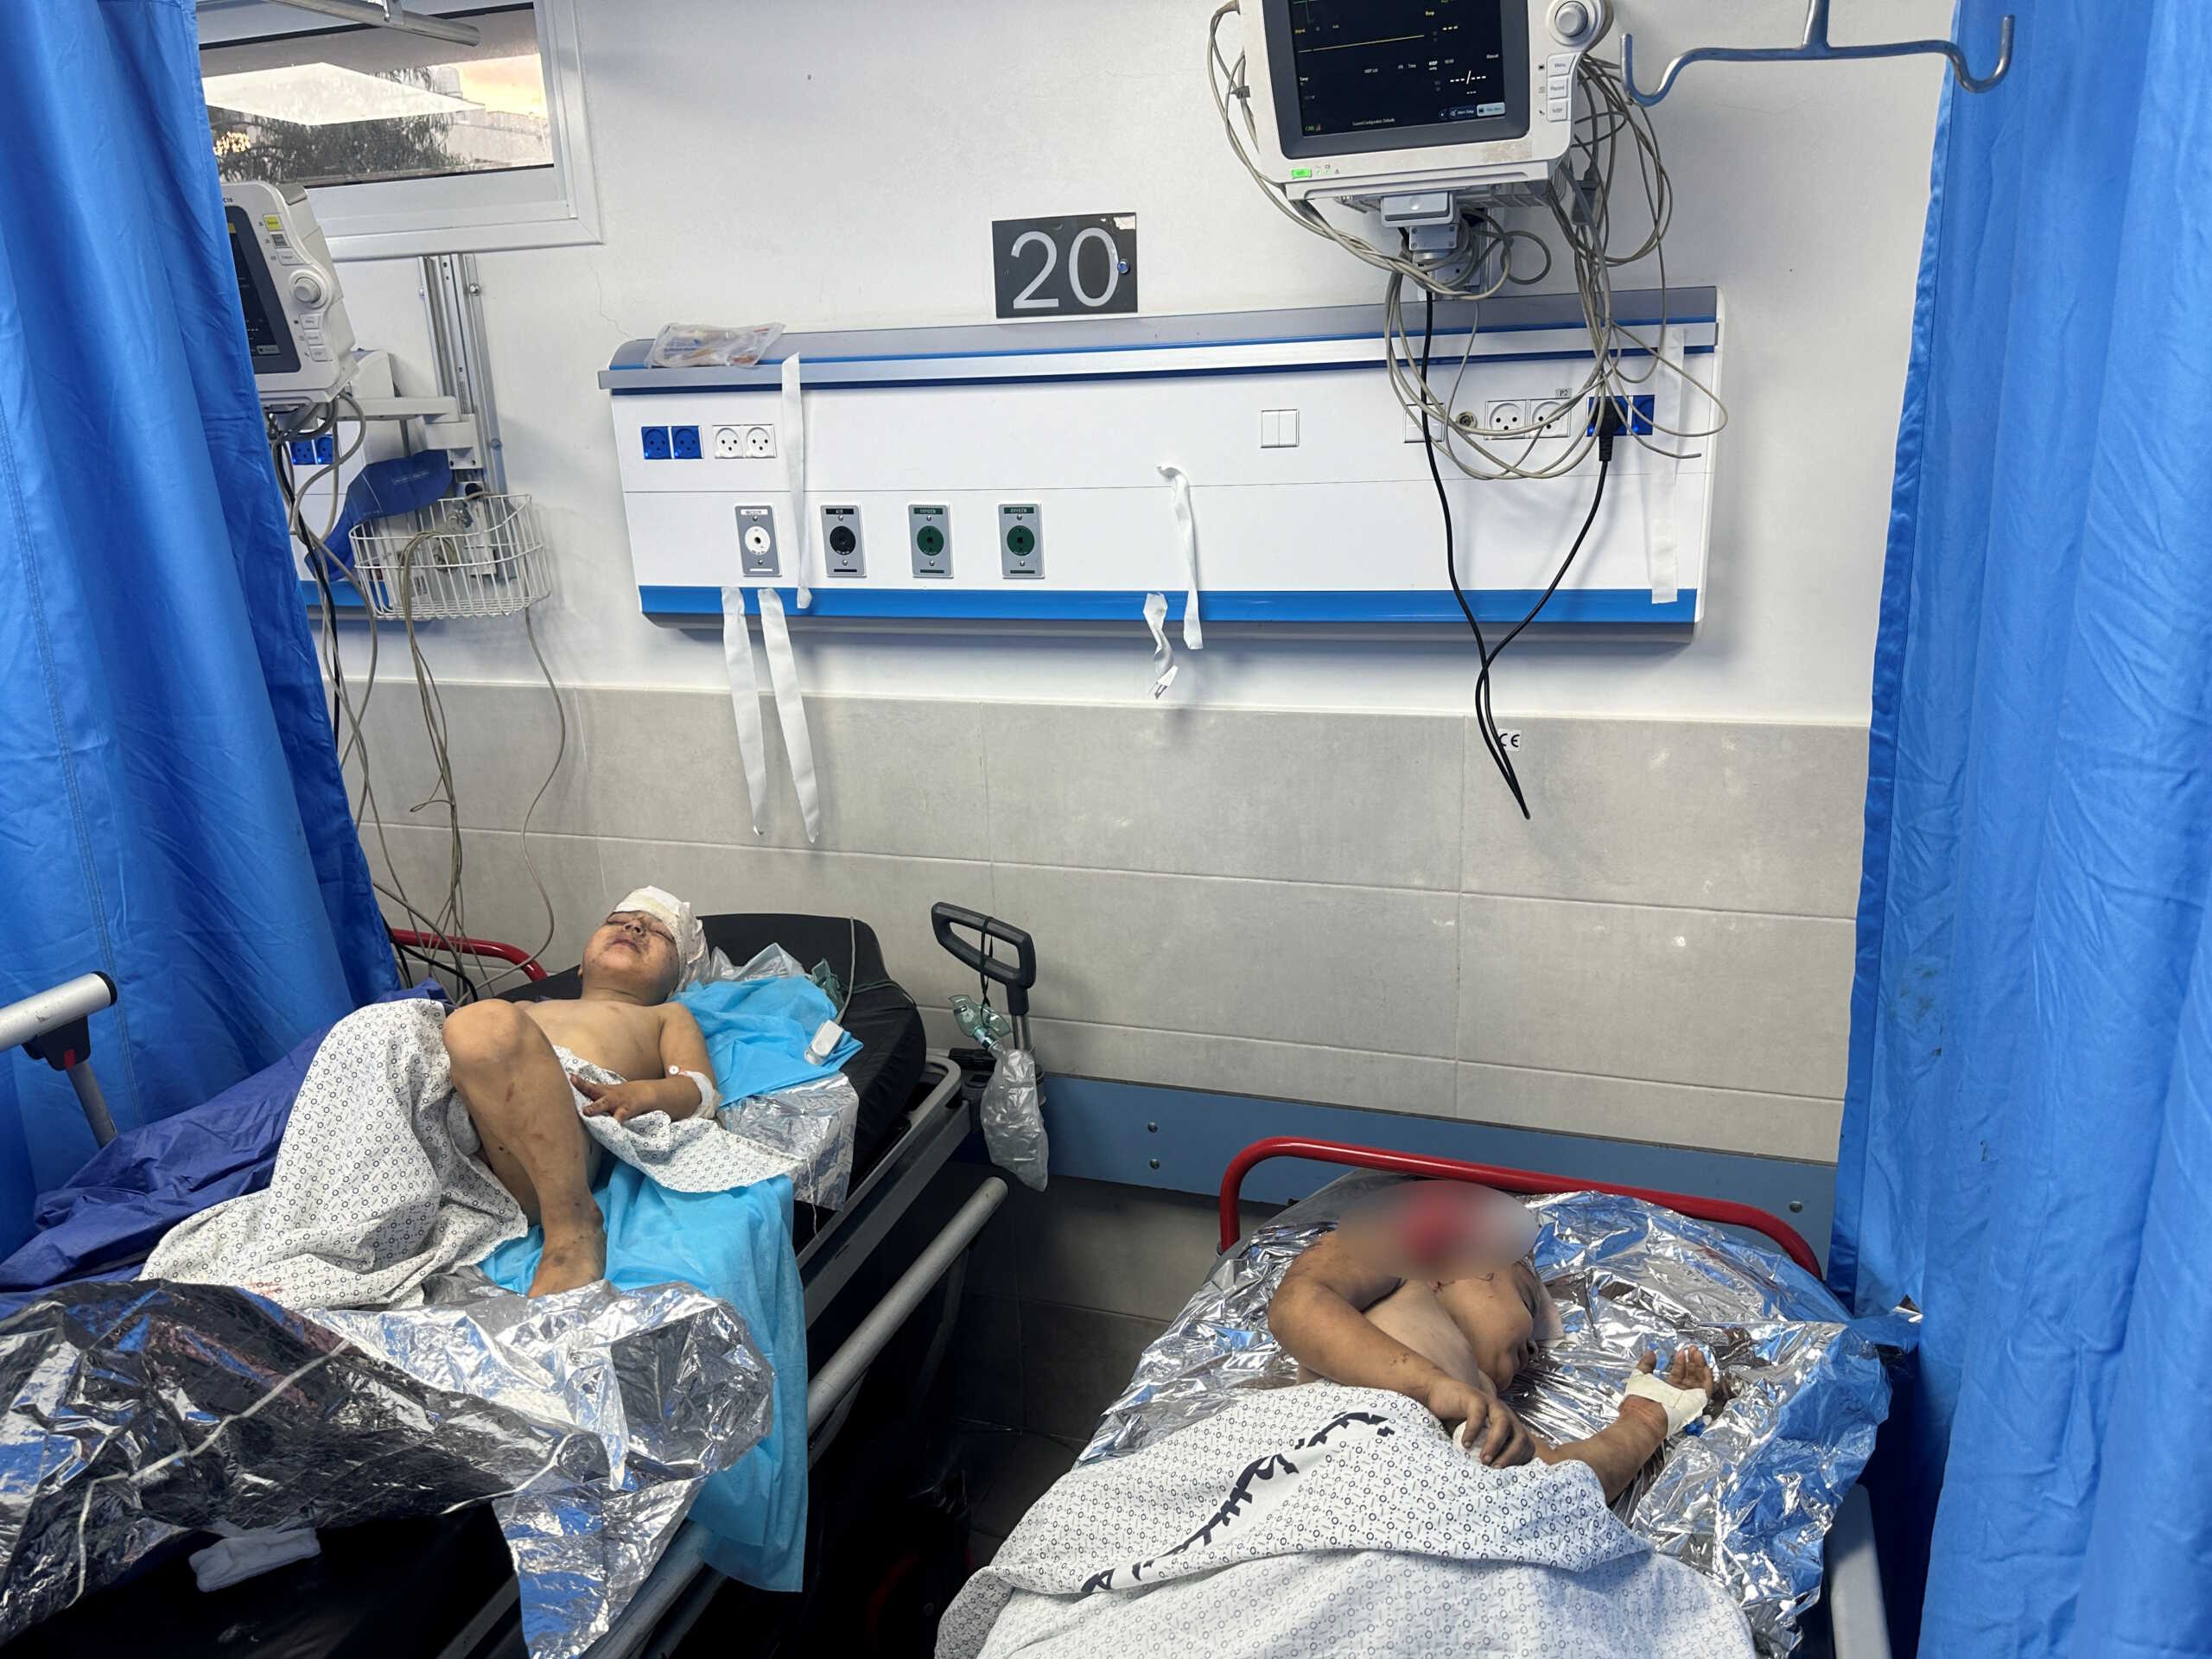 Λωρίδα της Γάζας: Η μετακίνηση σοβαρά ασθενών ισοδυναμεί με «καταδίκη σε θάνατο» λέει ο ΠΟΥ